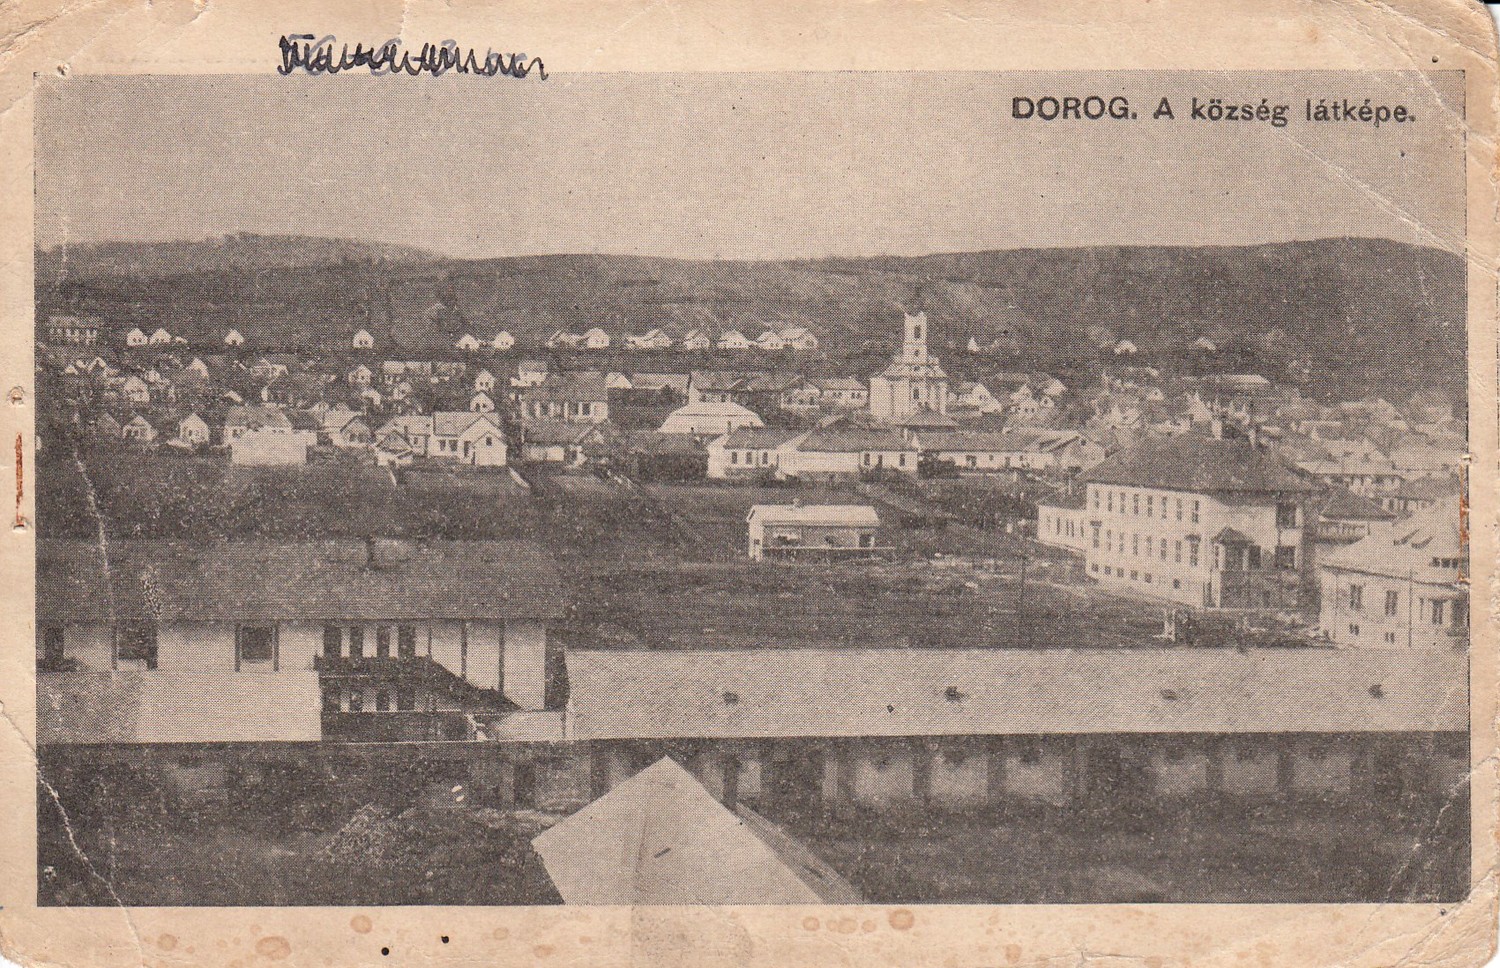 Dorog. A község látképe. (TMJV Tatabányai Múzeum CC BY-NC-SA)